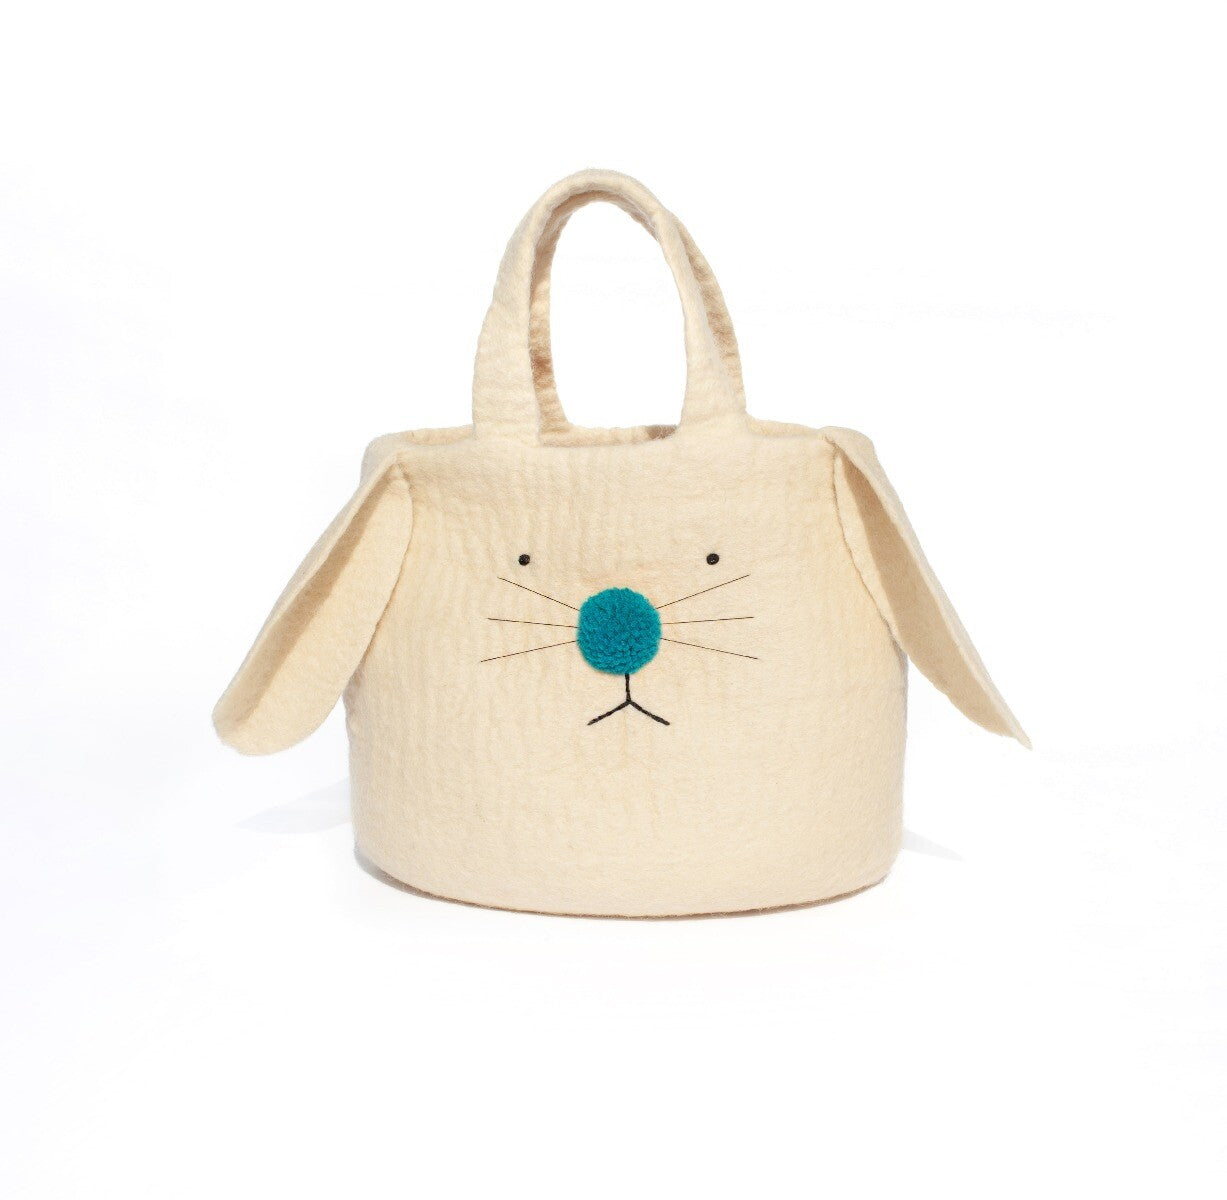 Pom Pom Bunny Bag, Turquoise